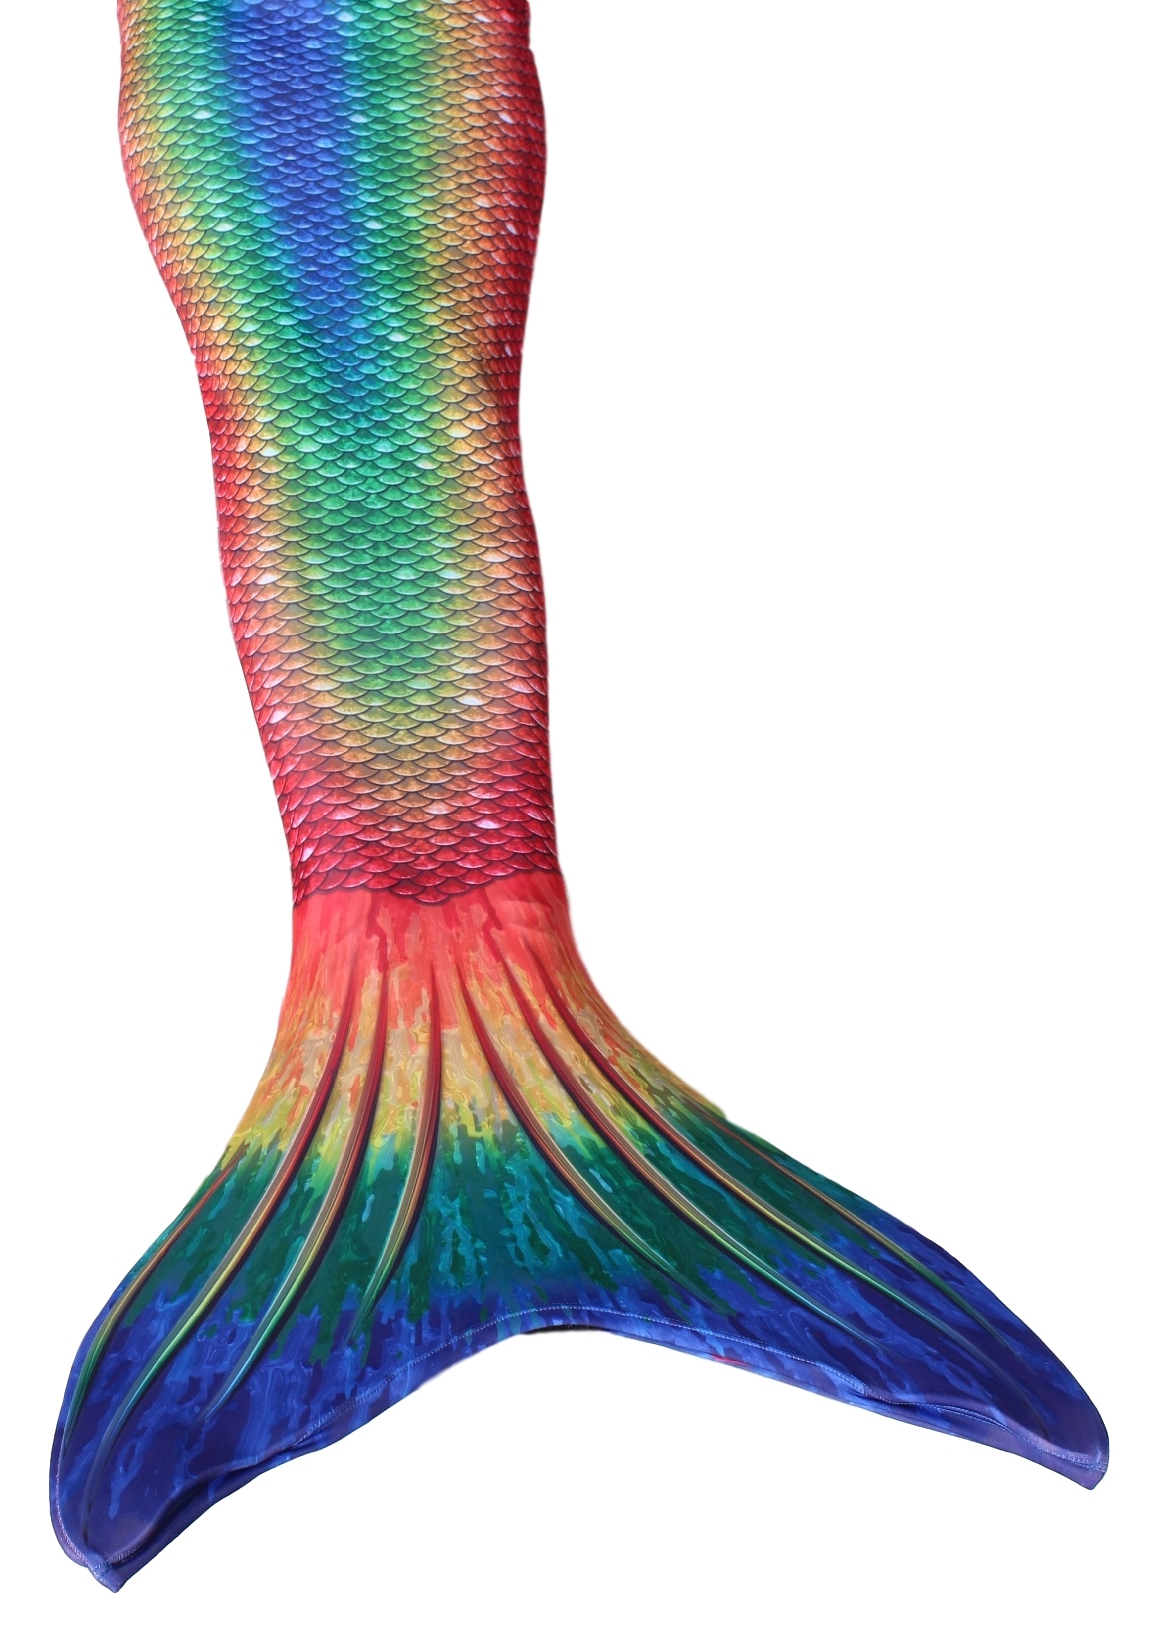 Mermaid Tails | Mermaid Tail | Mermaid Tails For Kids ...